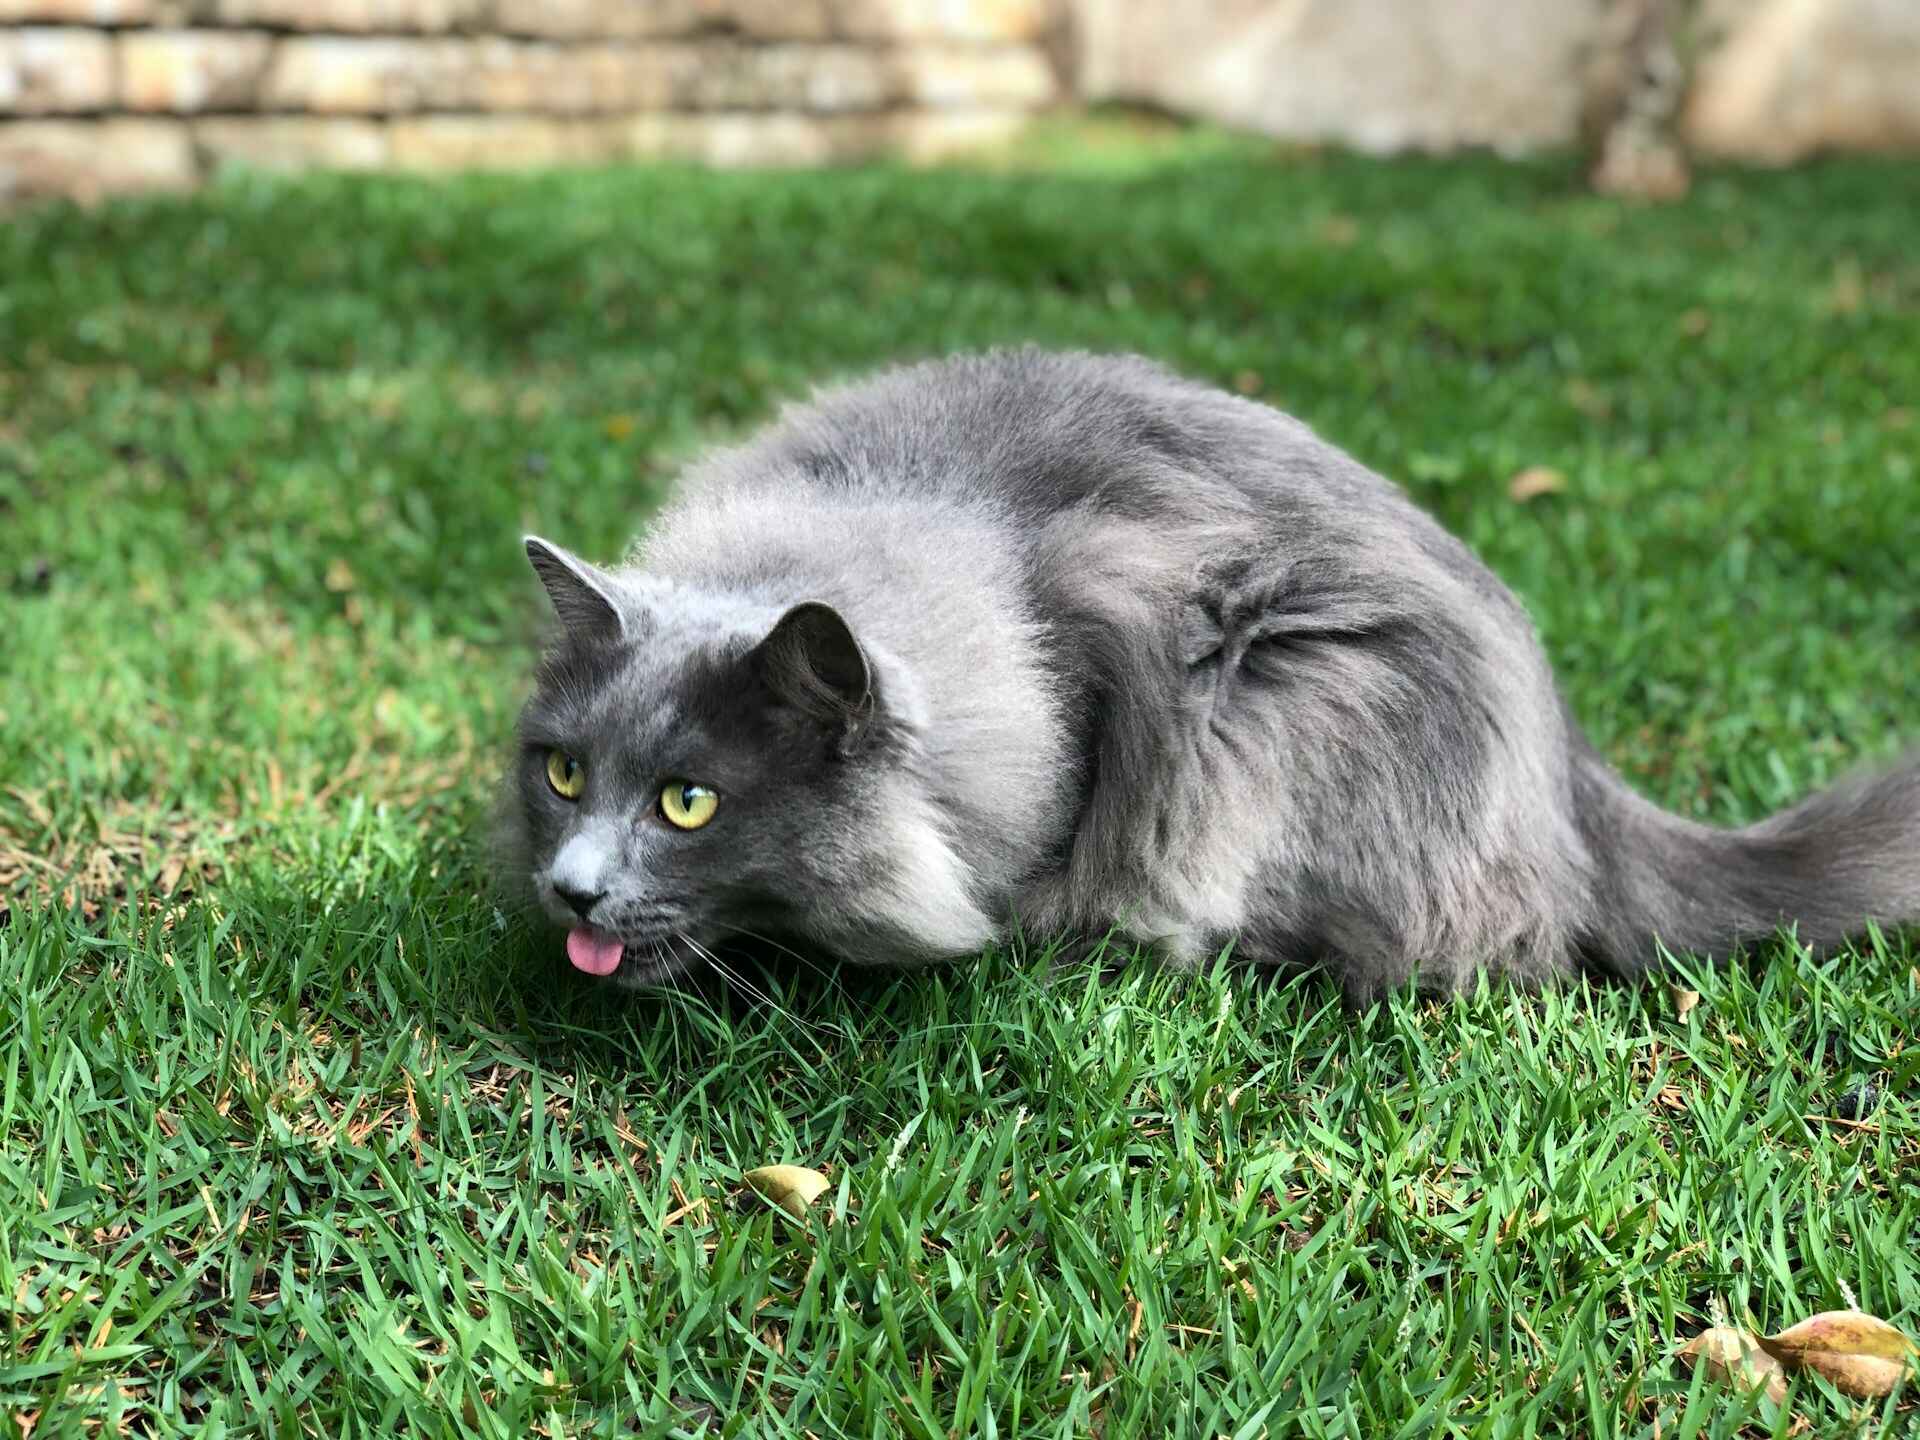 A grey cat exploring a grassy lawn